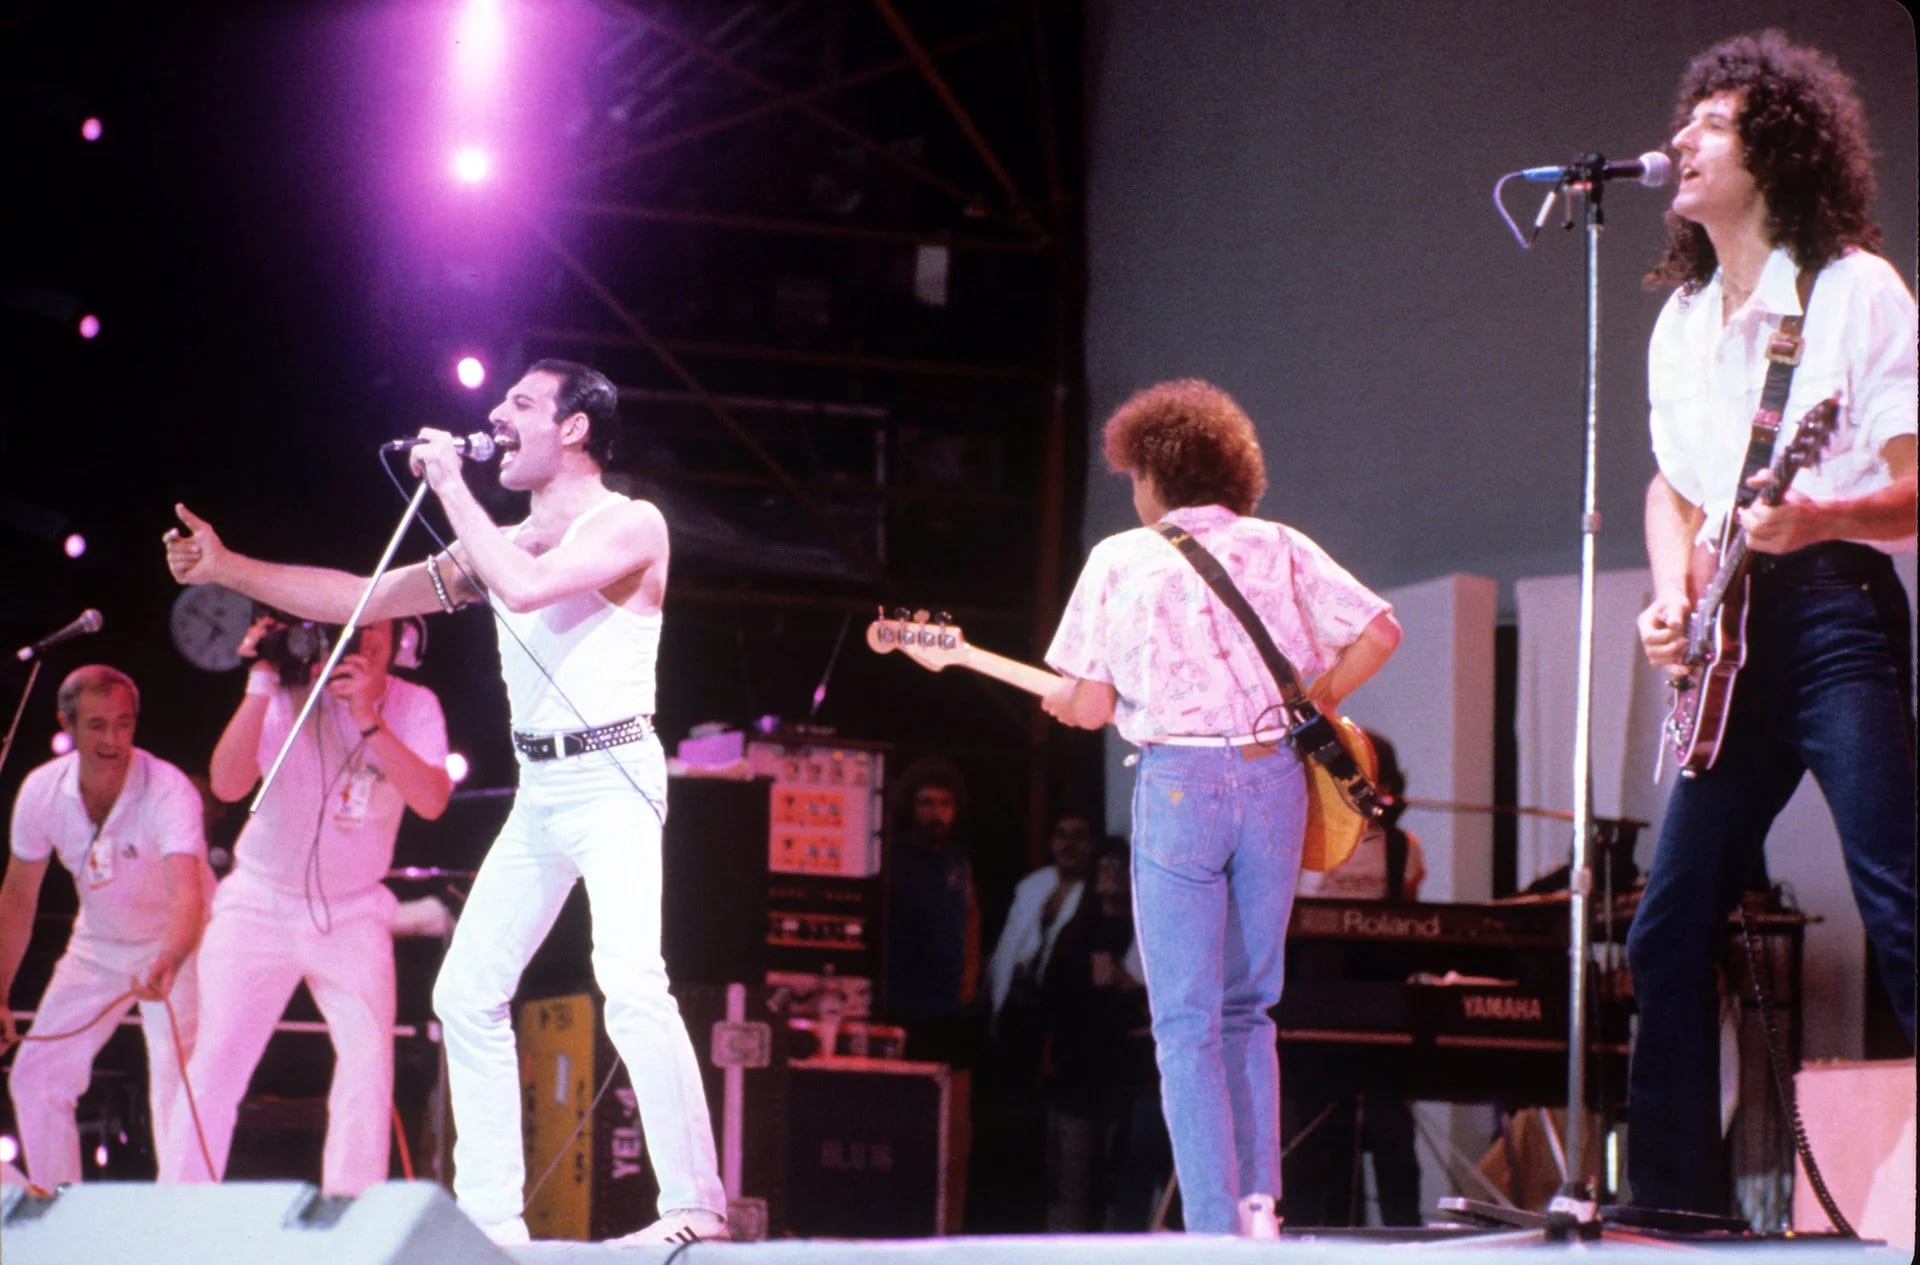 La presentación de Queen en el Live Aid es considerada la mejor de toda la historia 
Shutterstock 

